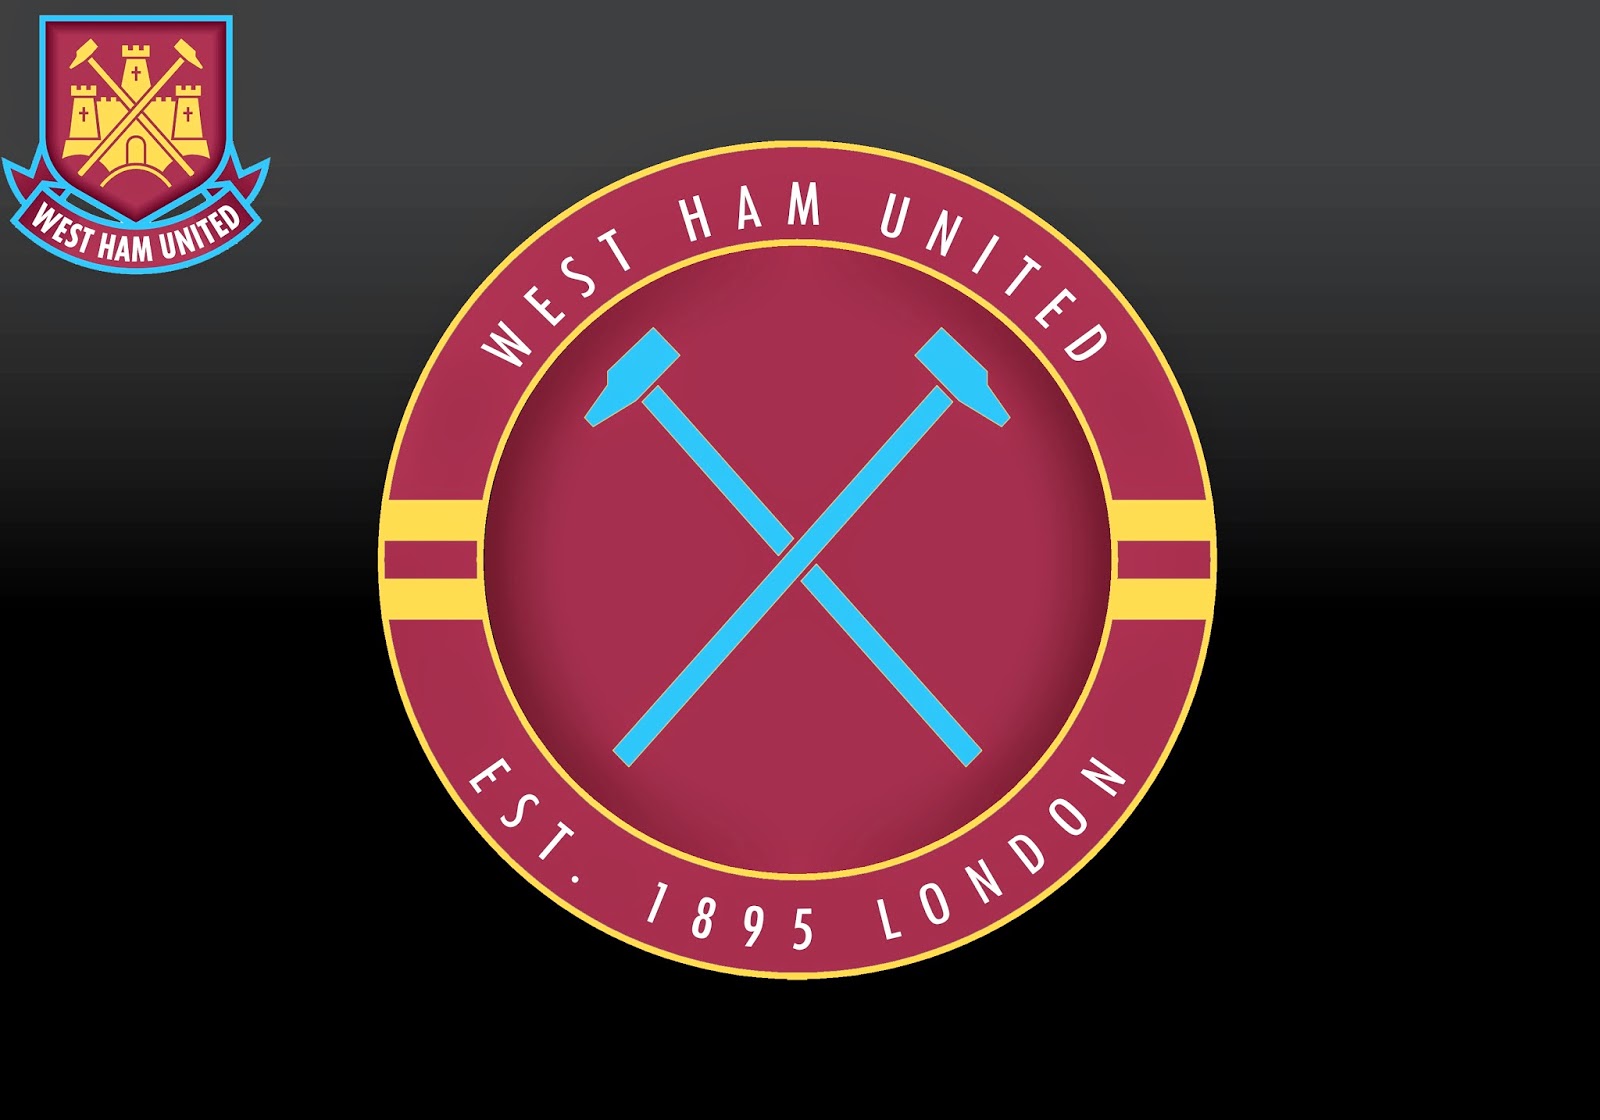 West Ham Badges: West Ham United 2016/17 badges